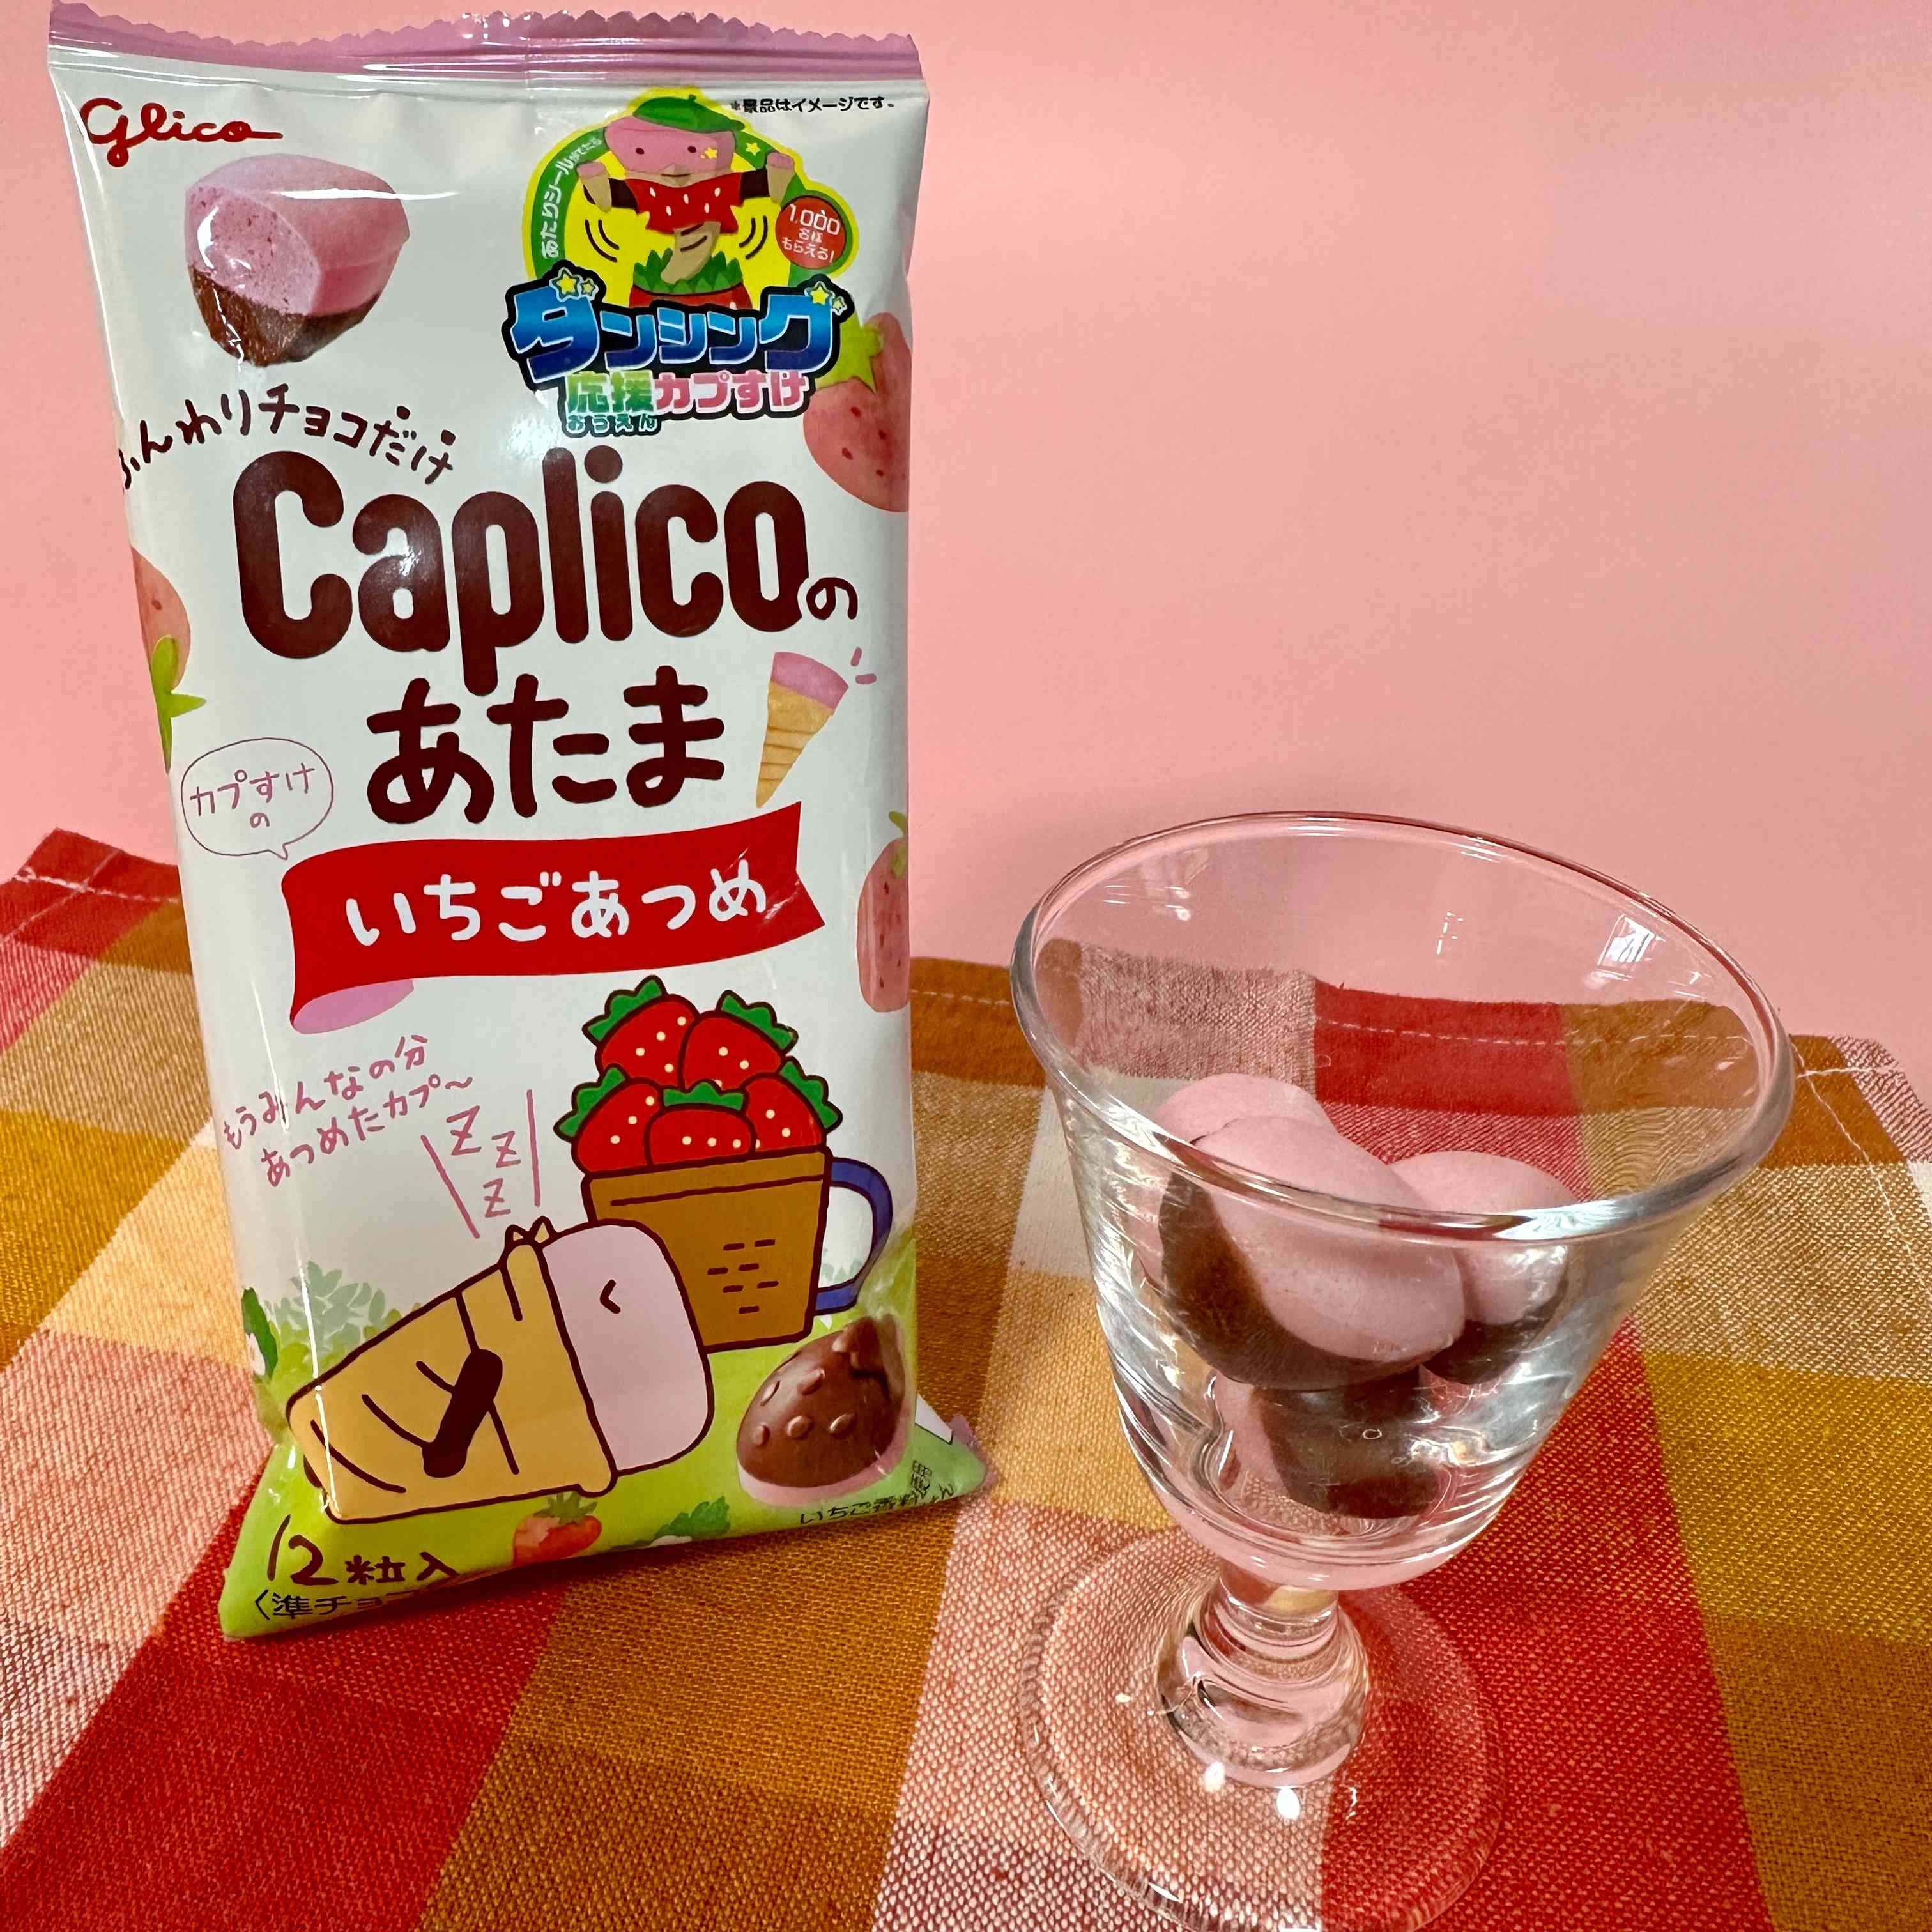 【glico】Caplico's Head　strawberry flavor　1piece　30ｇ